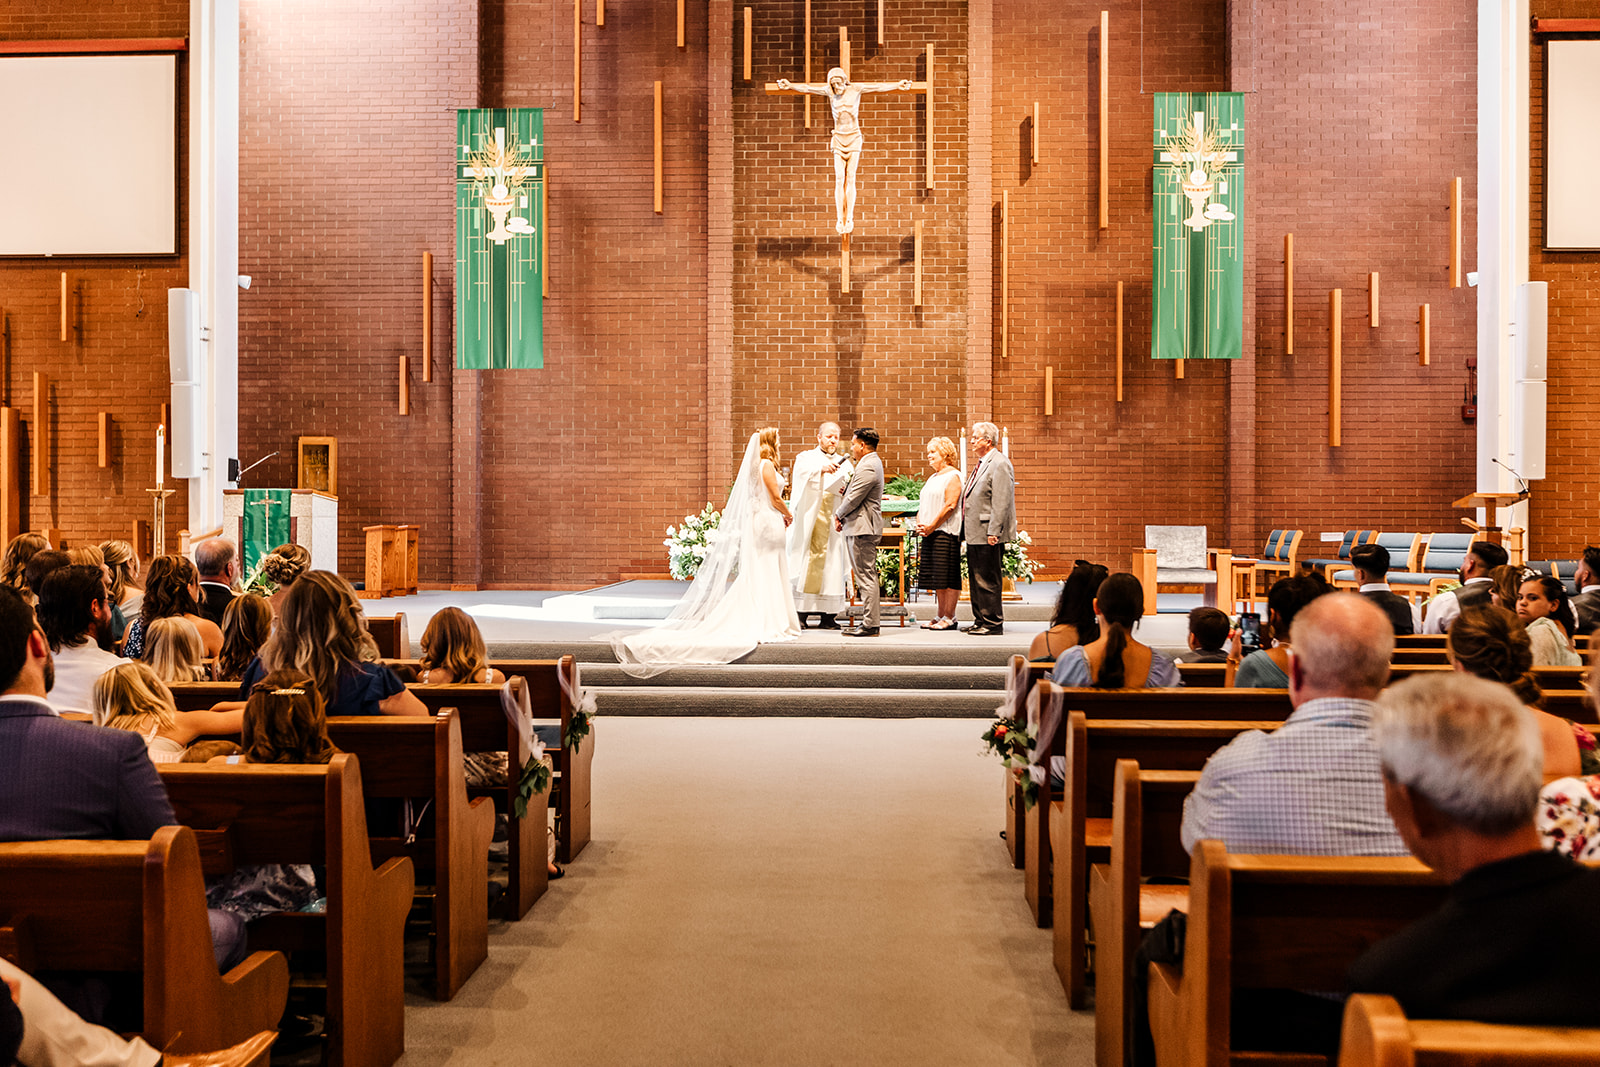 Catholic Wedding Mass